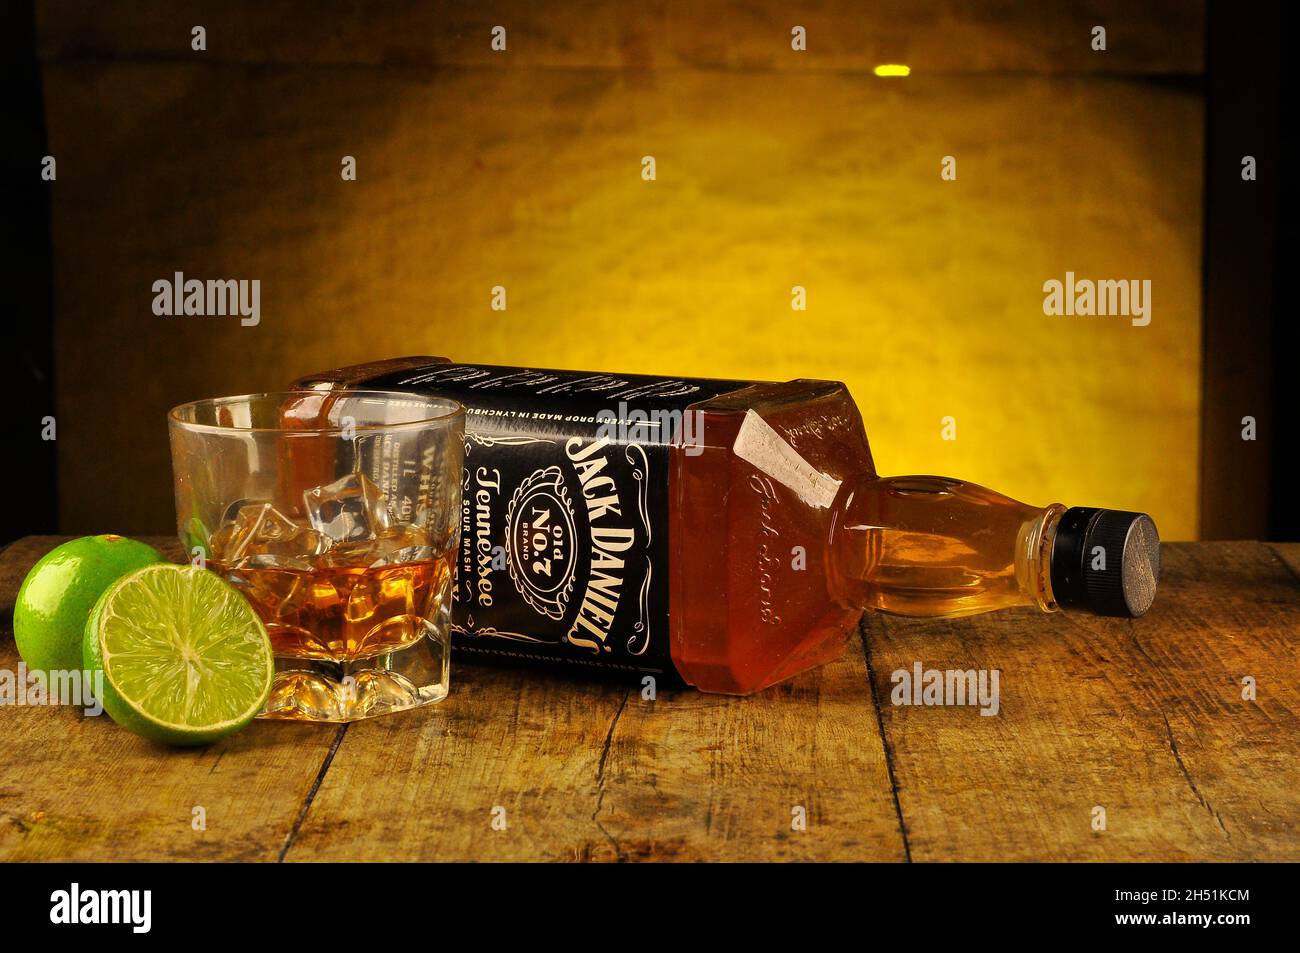 Vaso de whisky con una botella de Jack Daniel cerca Foto de stock